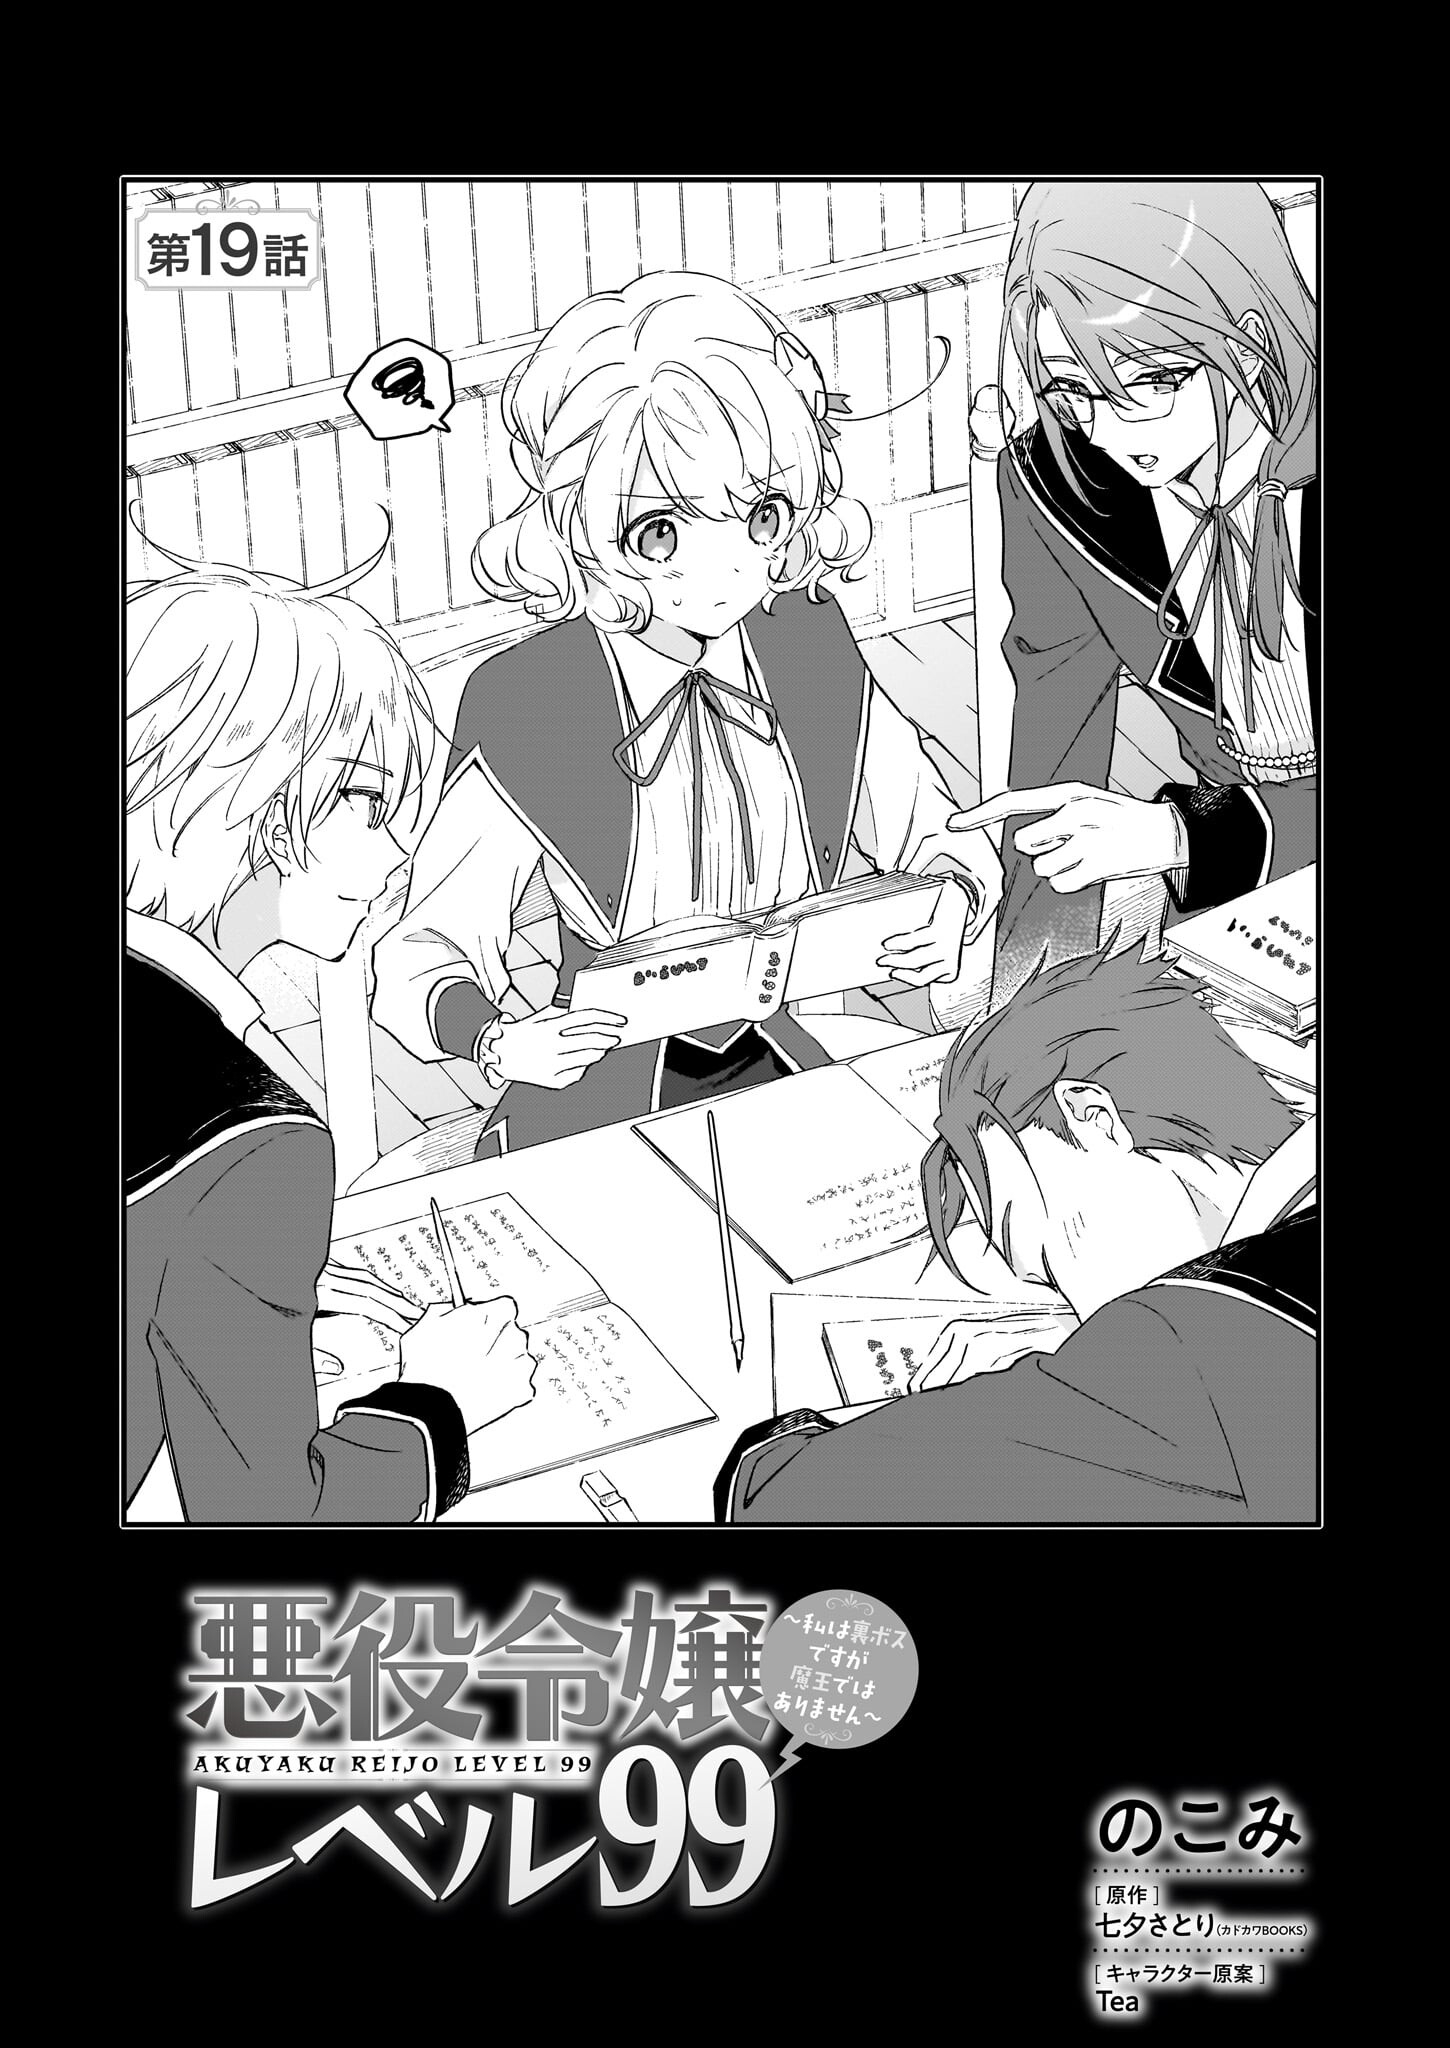 Akuyaku Reijou Level 99: Watashi wa UraBoss desu ga Maou de wa arimasen - Chapter 19 - Page 1